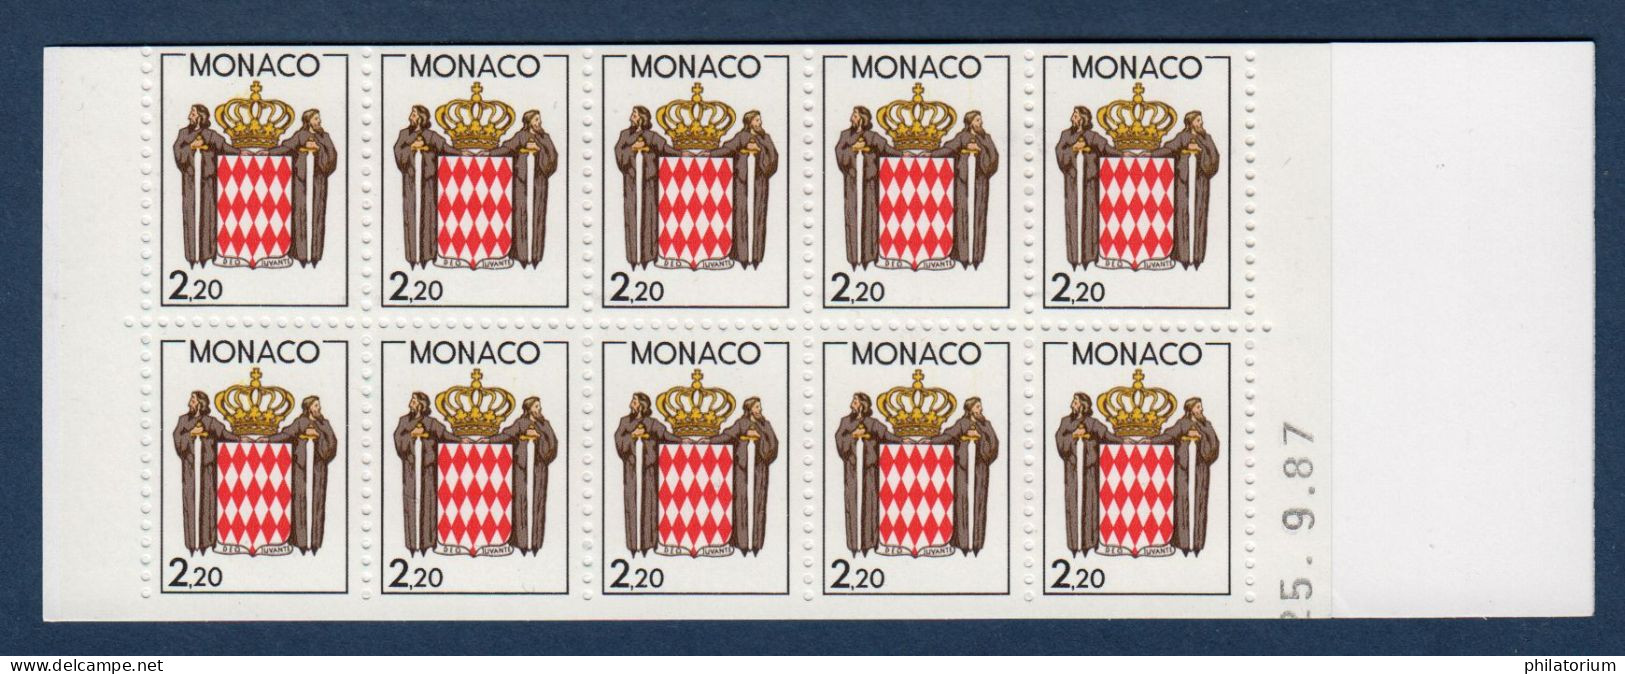 Monaco Timbre Neuf, Yv 1613, Carnet Usage Courant Non Plié, Daté 25.9.87, - Postzegelboekjes